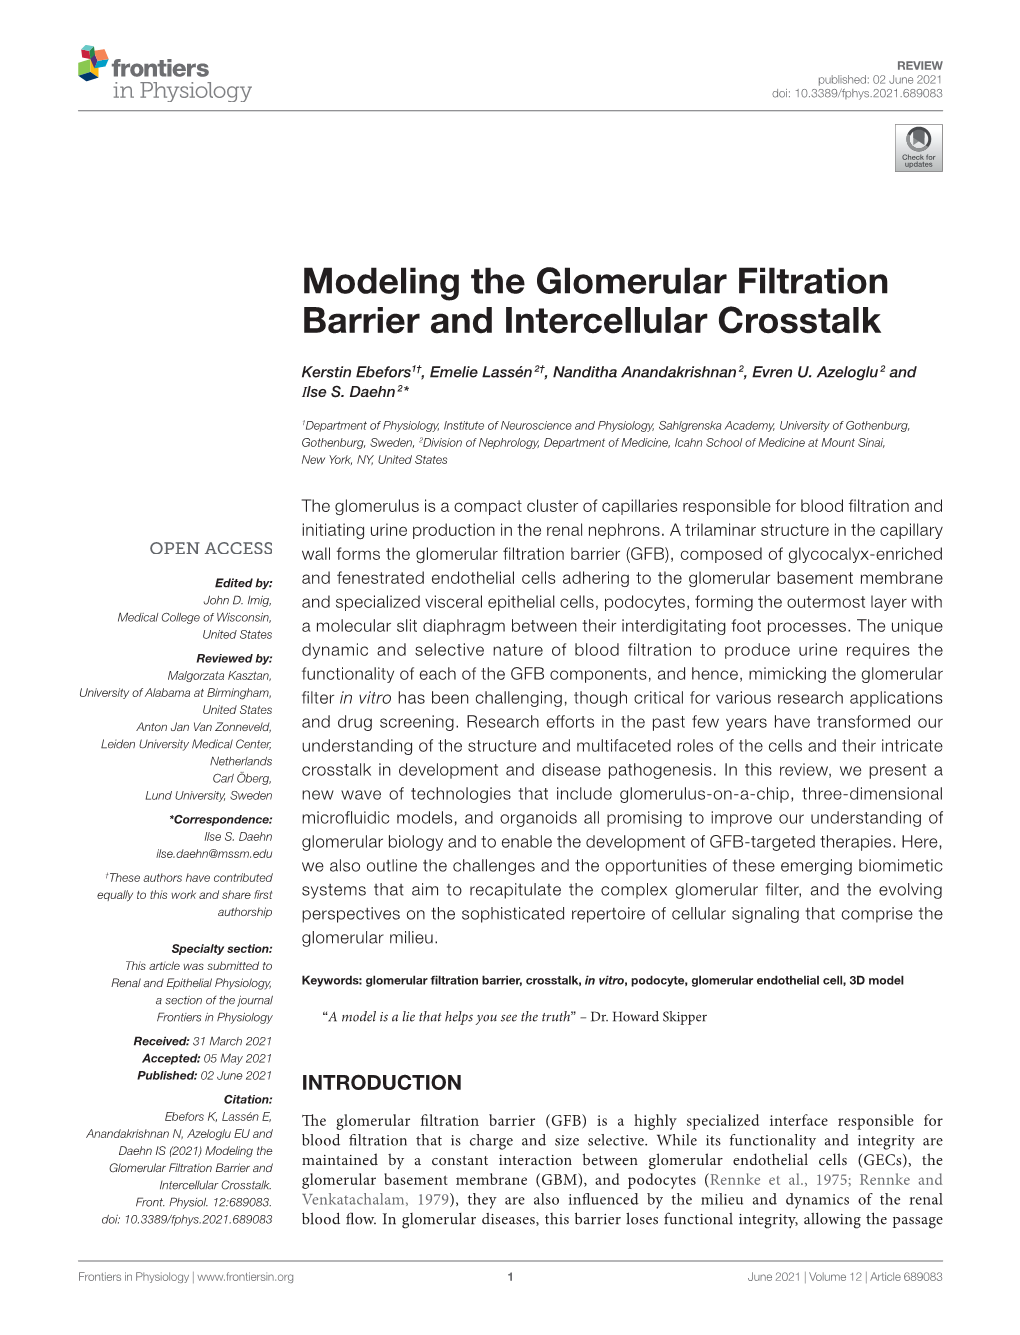 Modeling the Glomerular Filtration Barrier and Intercellular Crosstalk